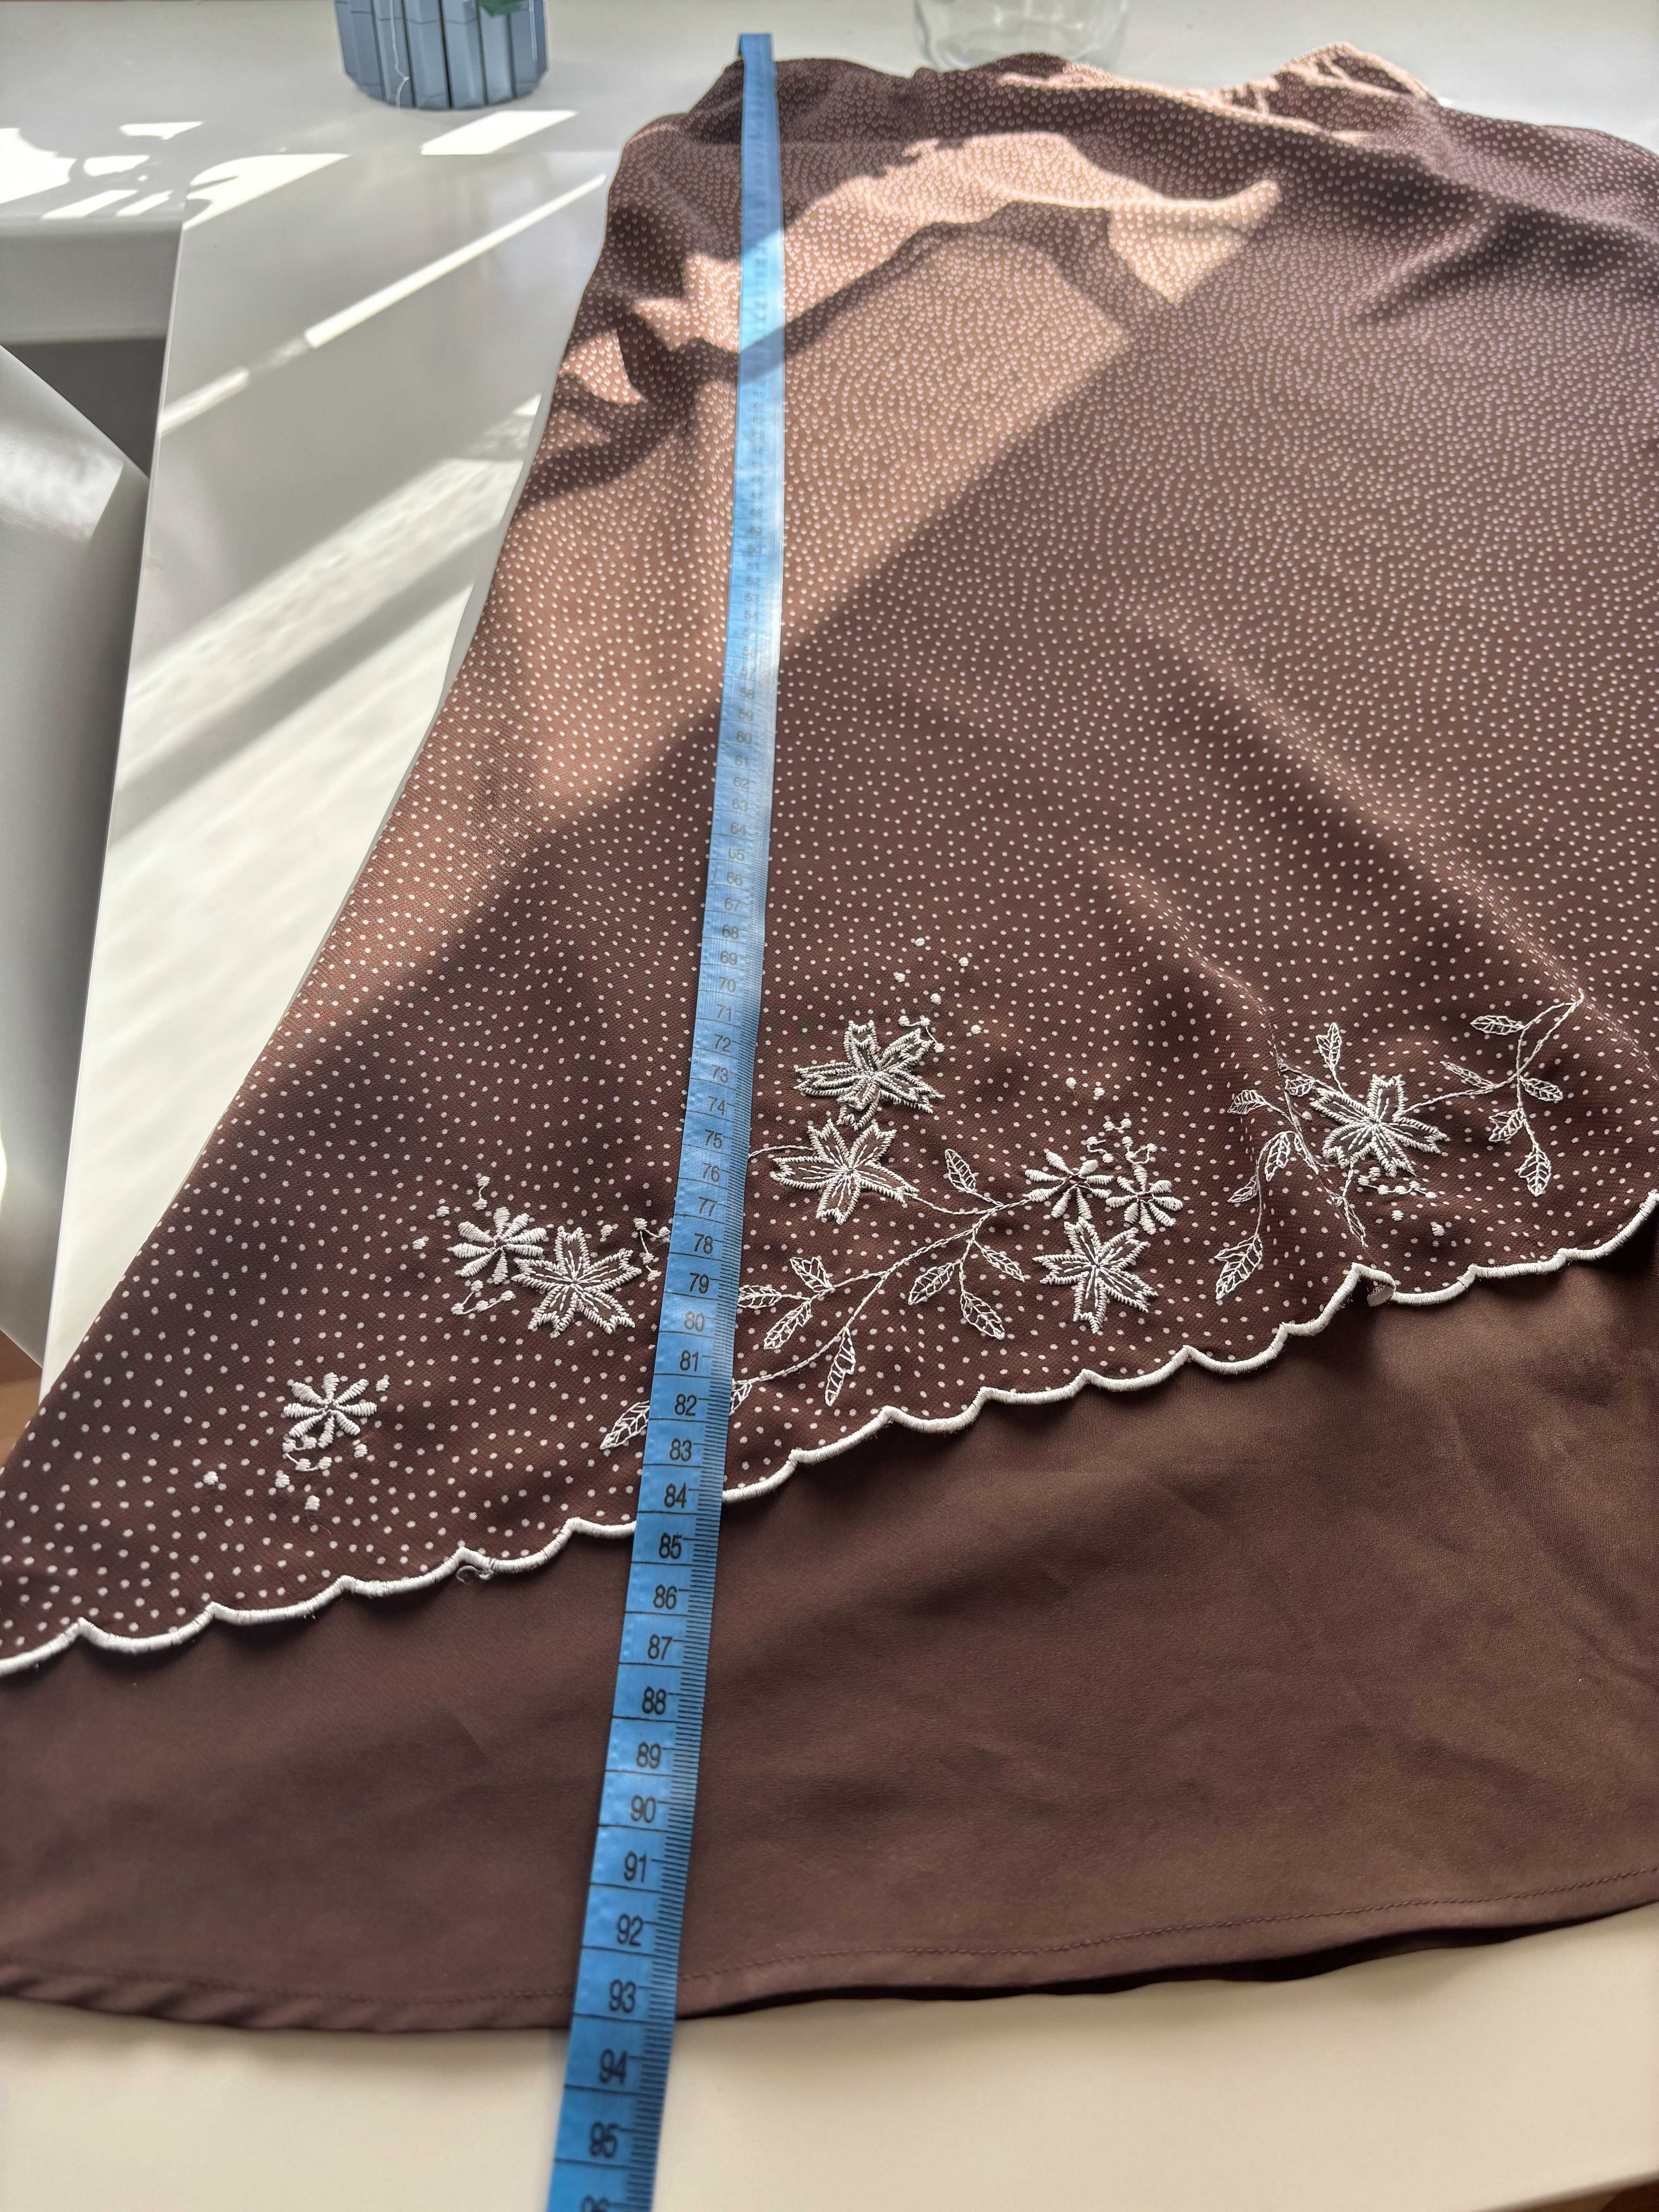 Spódnica dwuwarstwowa wiosenna brązowa z haftem kwiatów - S